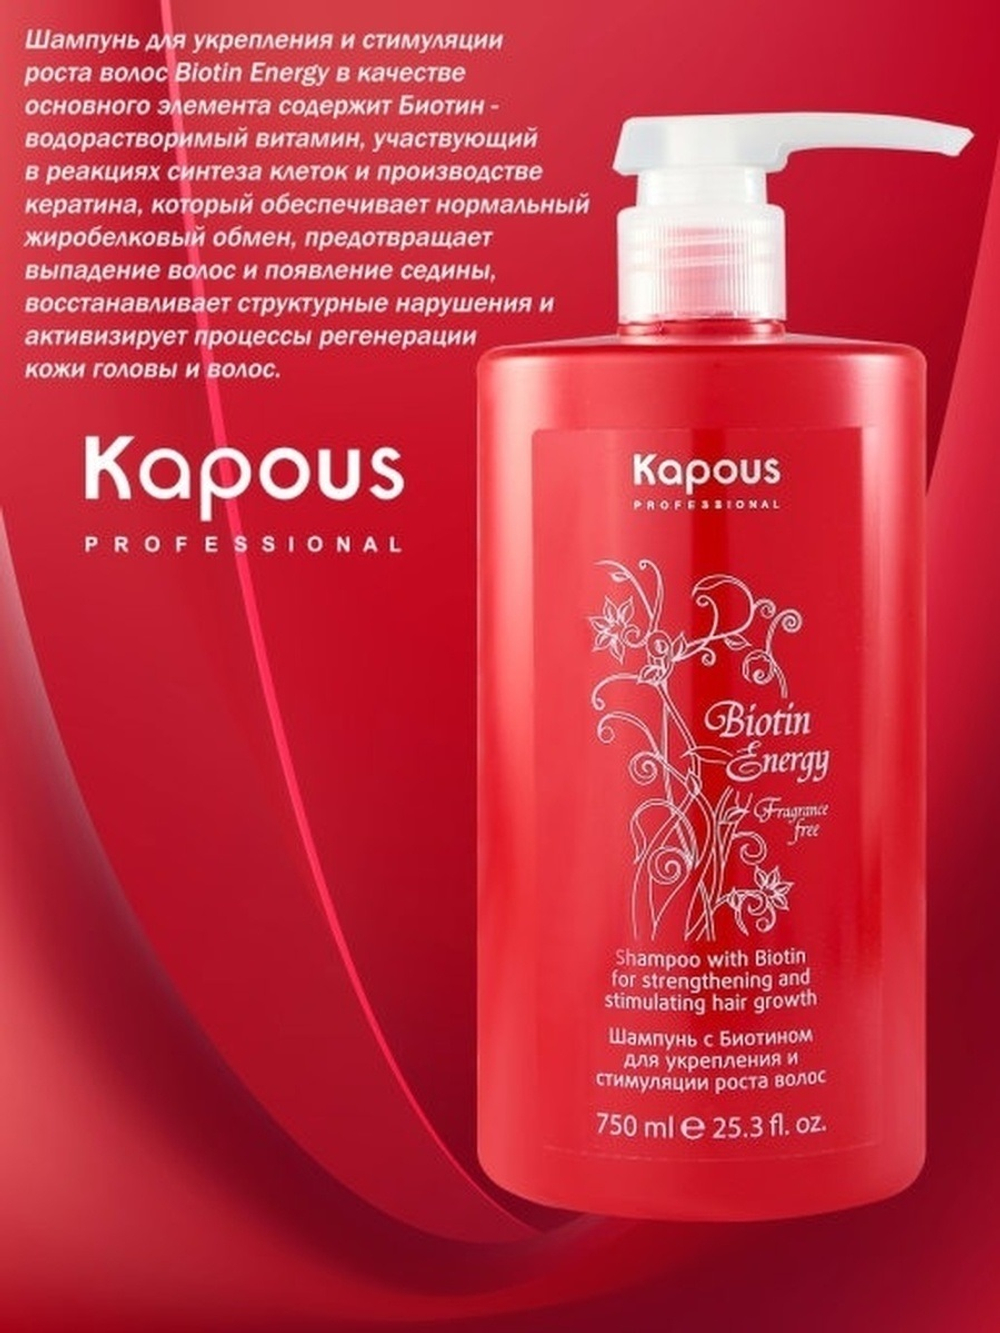 Kapous Professional Biotin Energy Шампунь для волос, с биотином, для укрепления и стимуляции роста волос, 750 мл